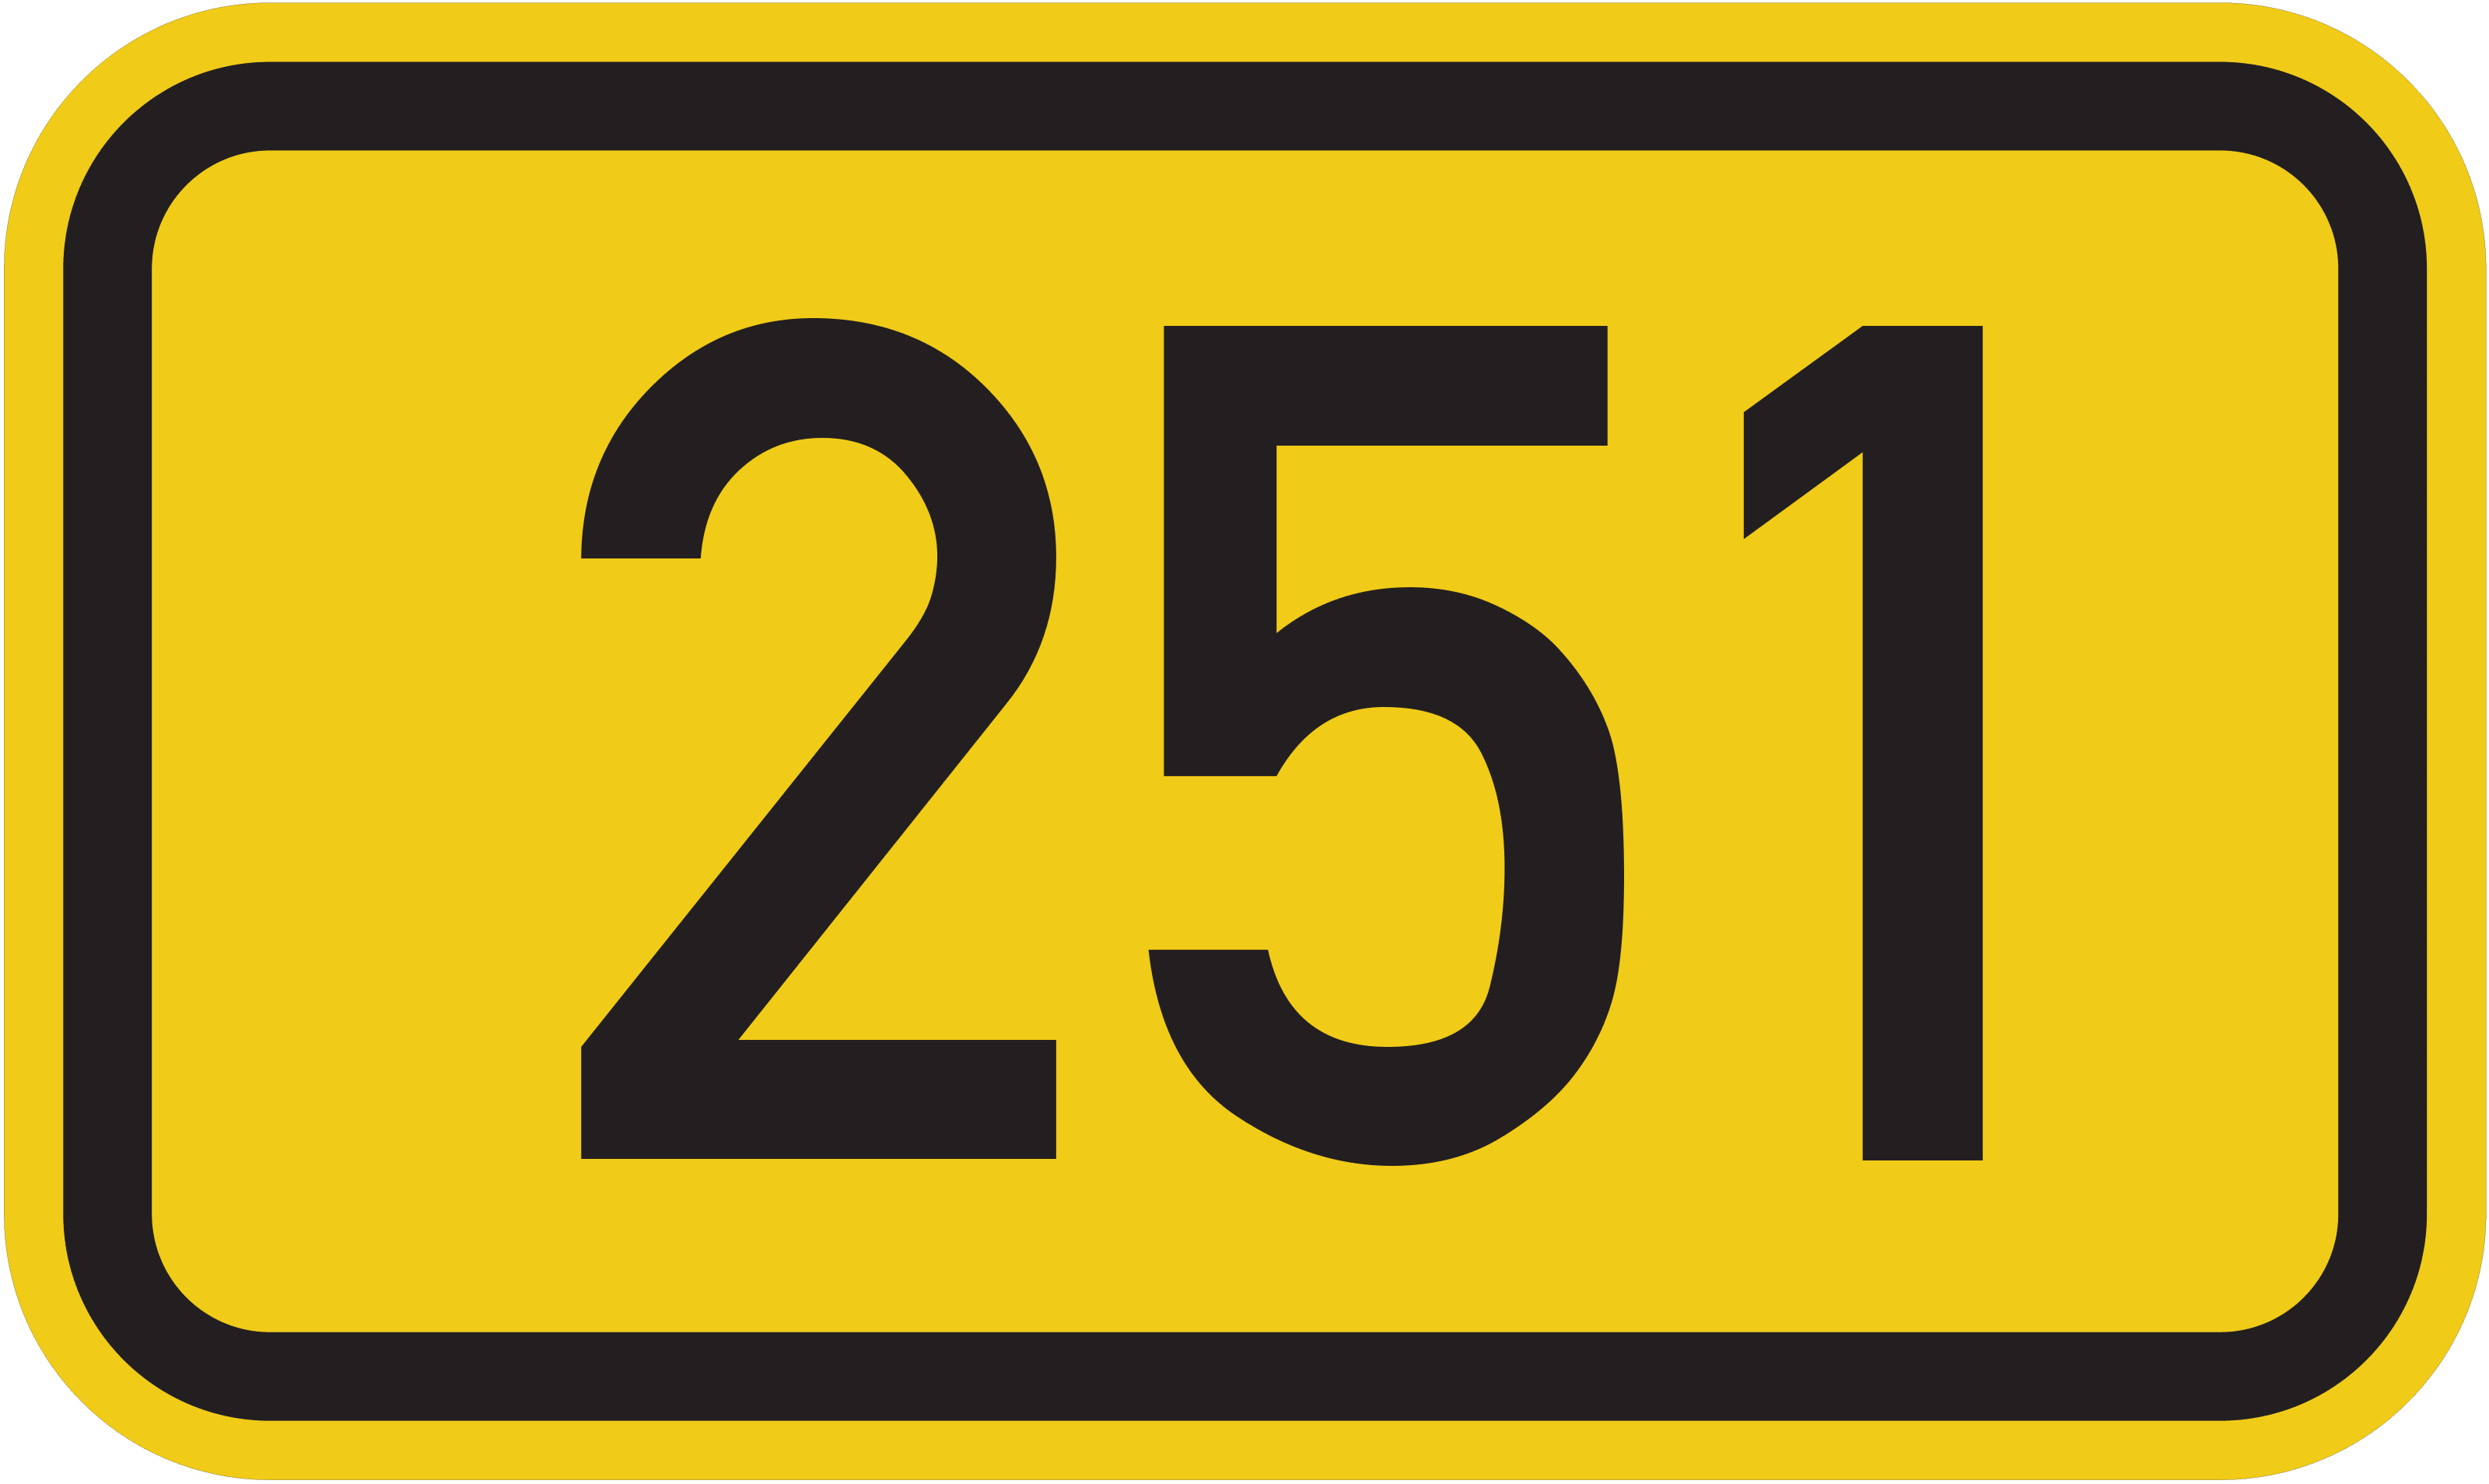 Bundesstraße B 251